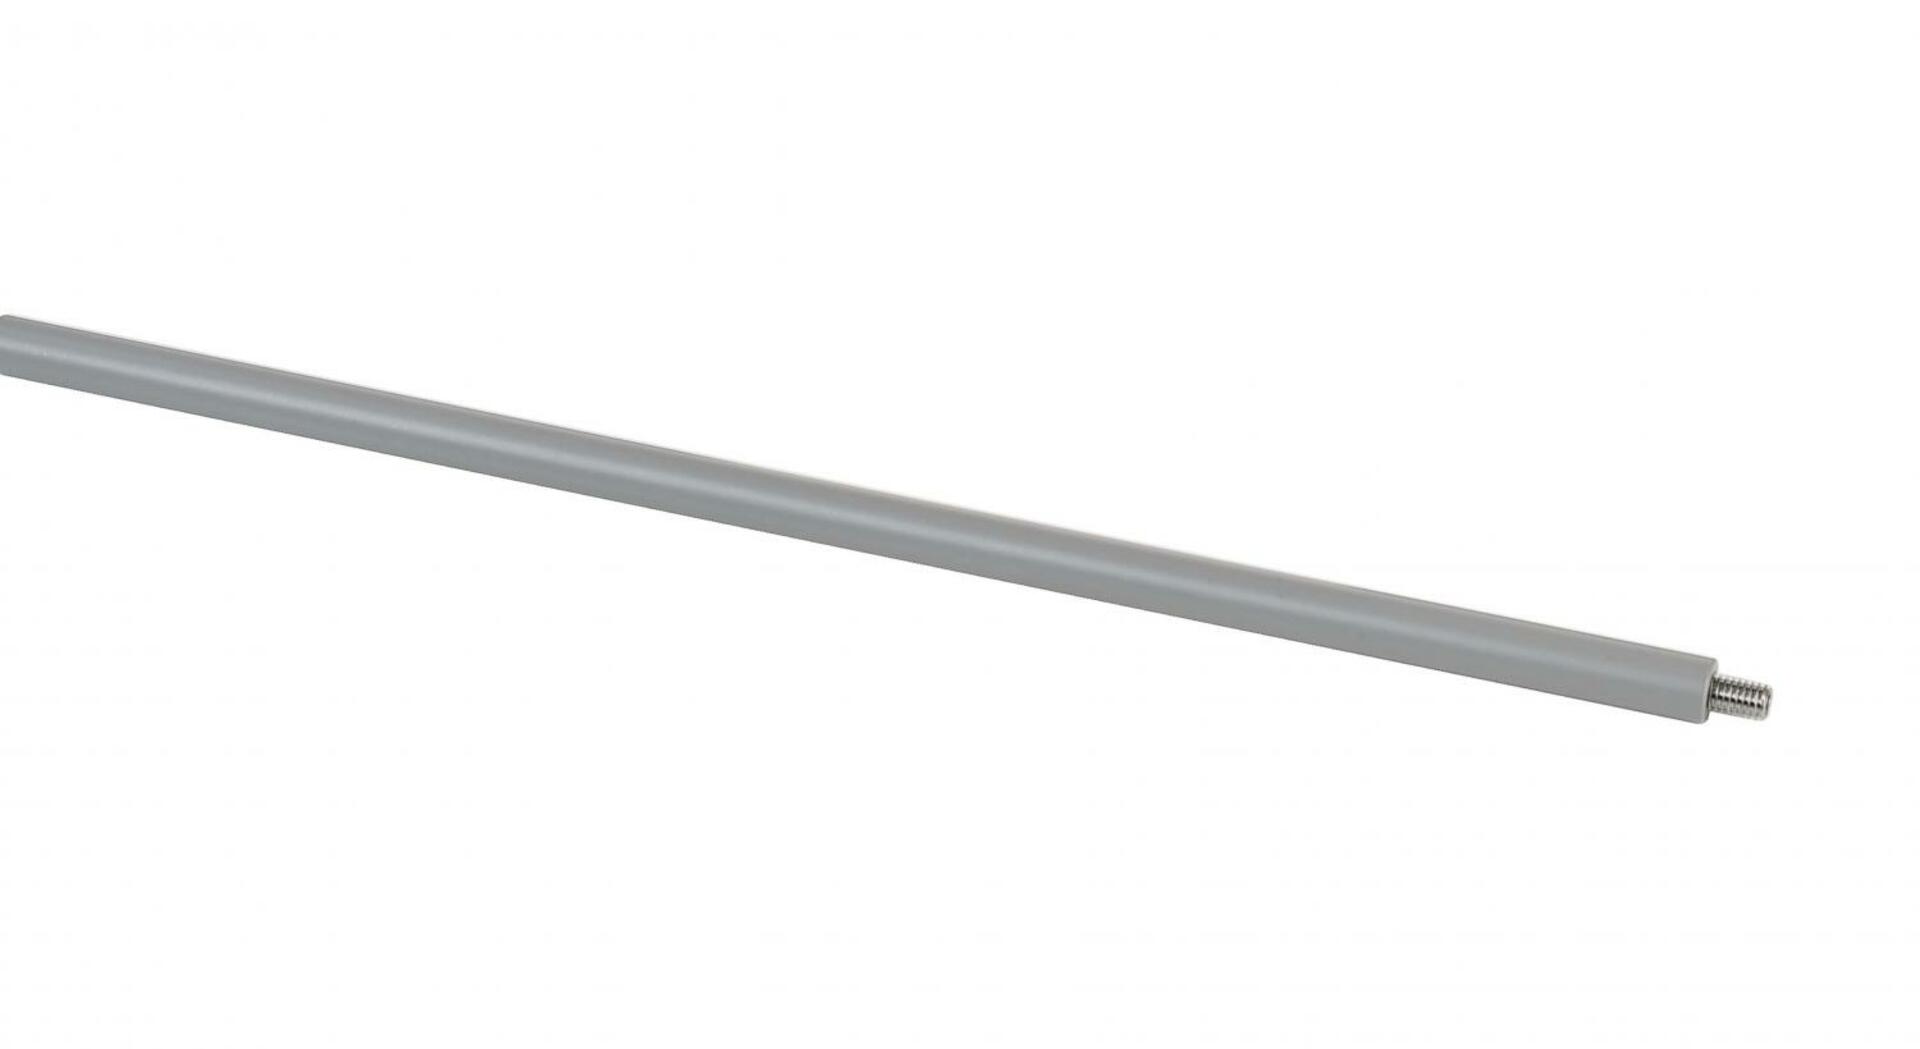 Light Impressions Deko-Light prodloužení pro závěs (30cm) pro 3-fázový svítidla D Line stříbrná  710088